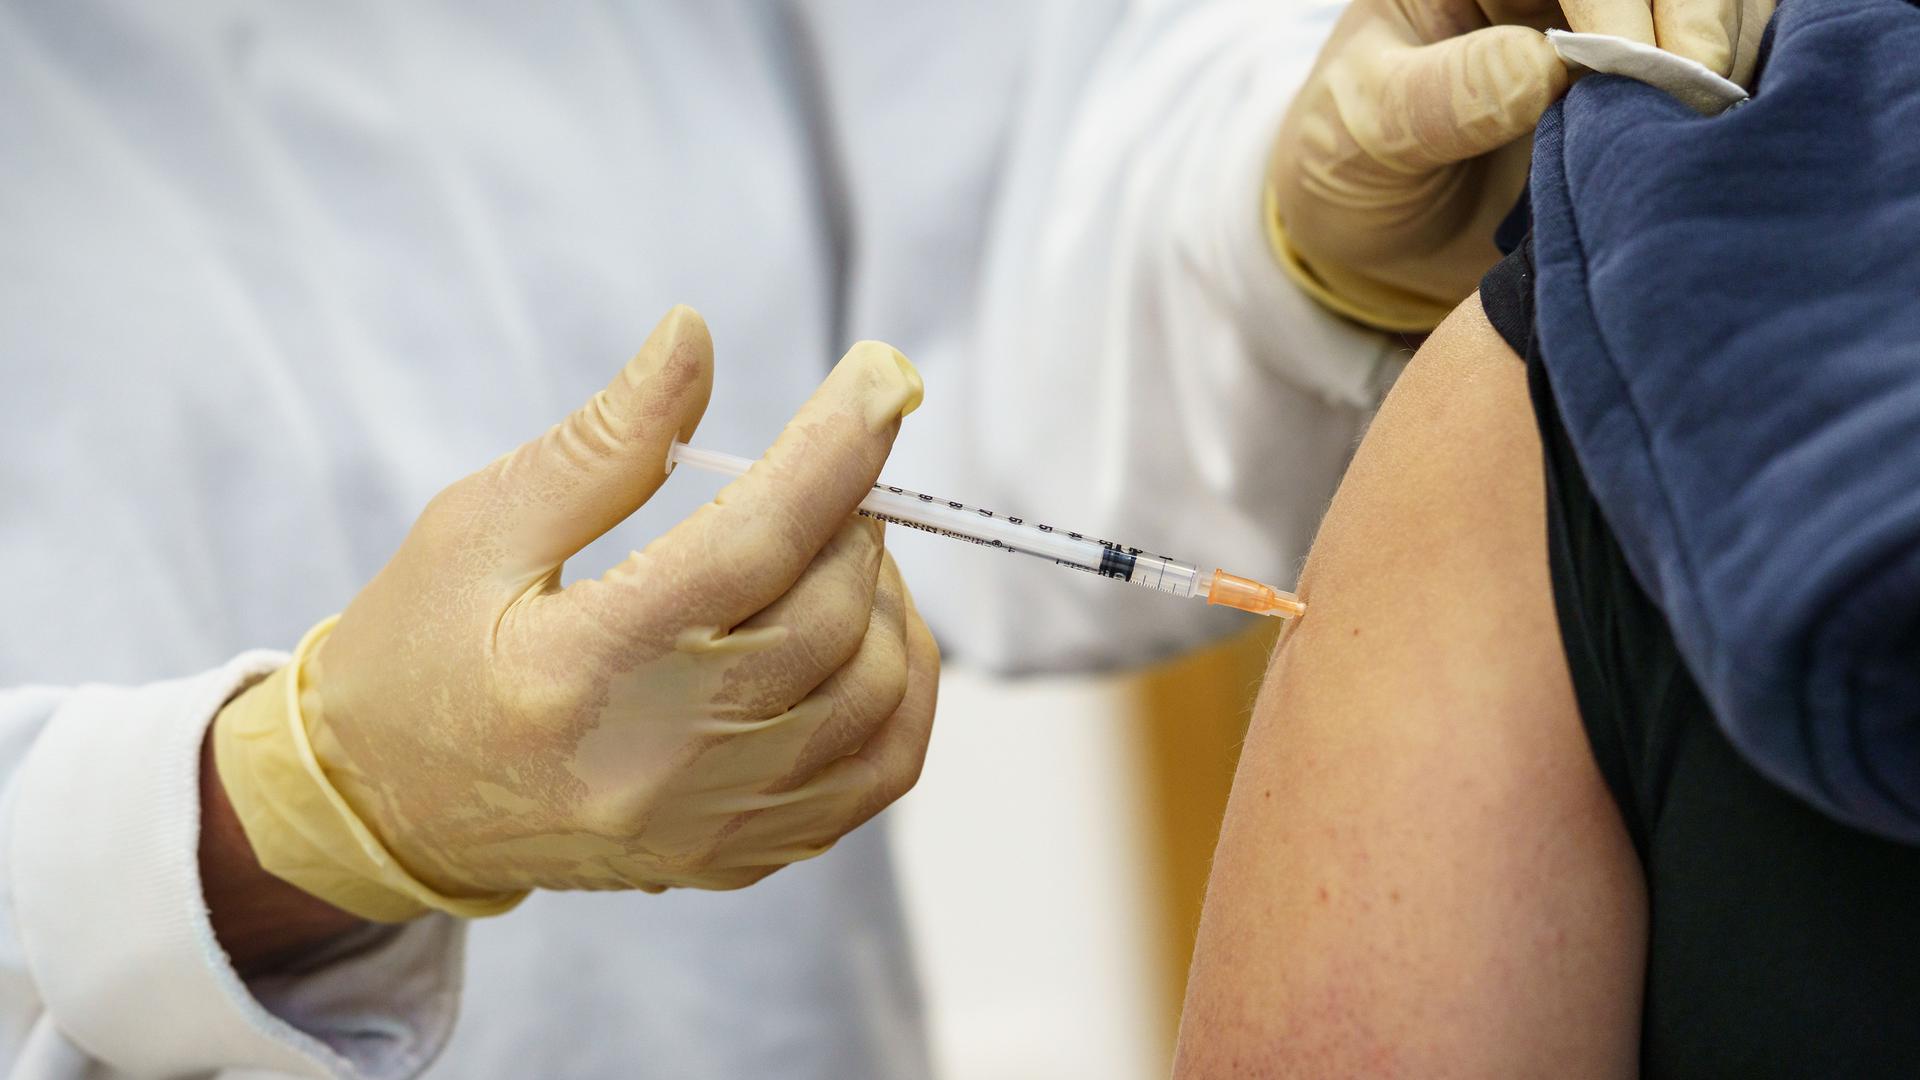 Le 28 décembre 2020, la campagne de vaccination anti-covid luxembourgeoise débutait par l'injection du sérum à deux infirmiers.